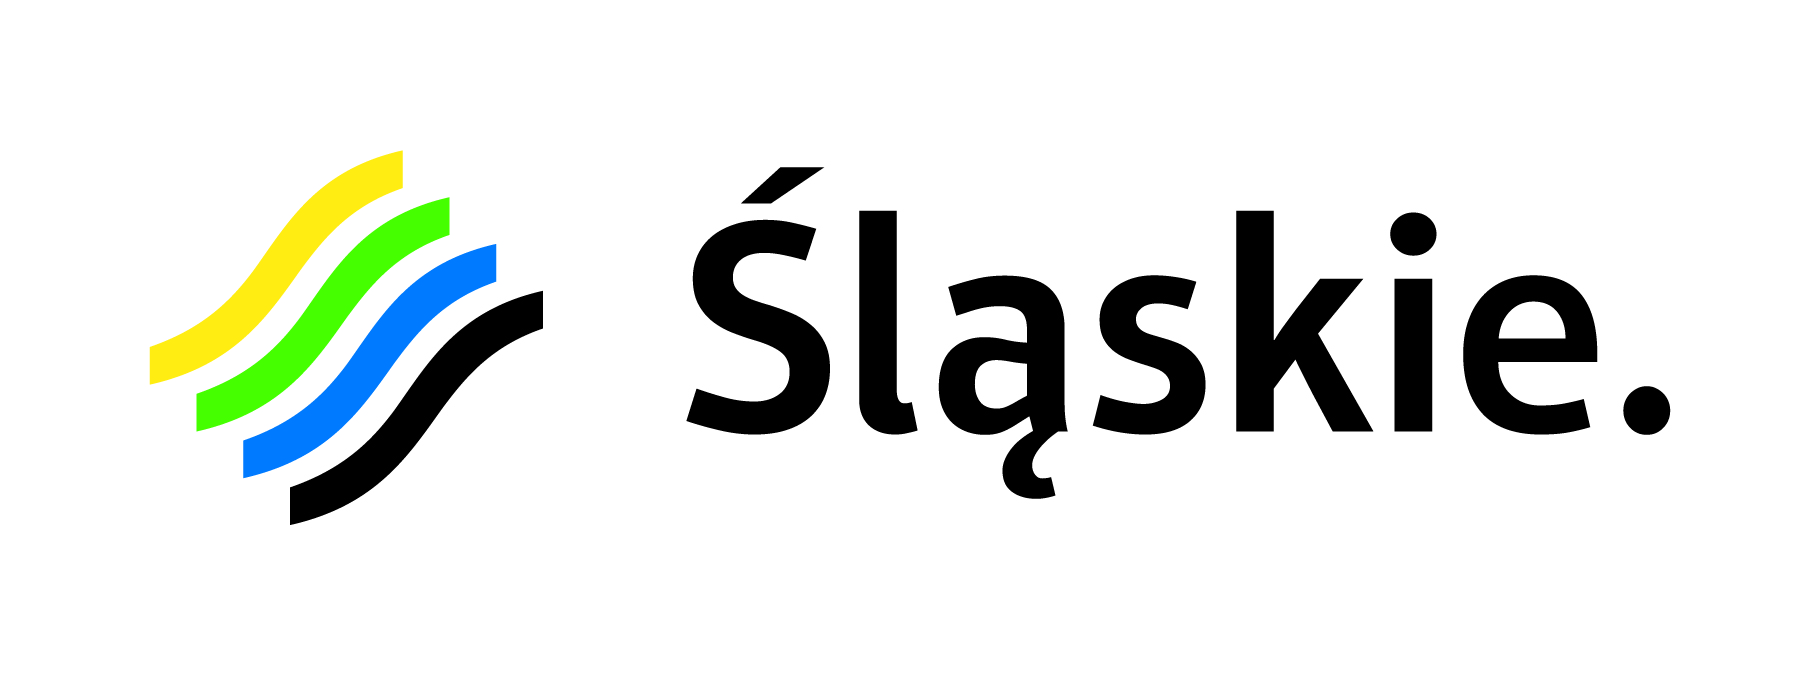 logo_slaskie